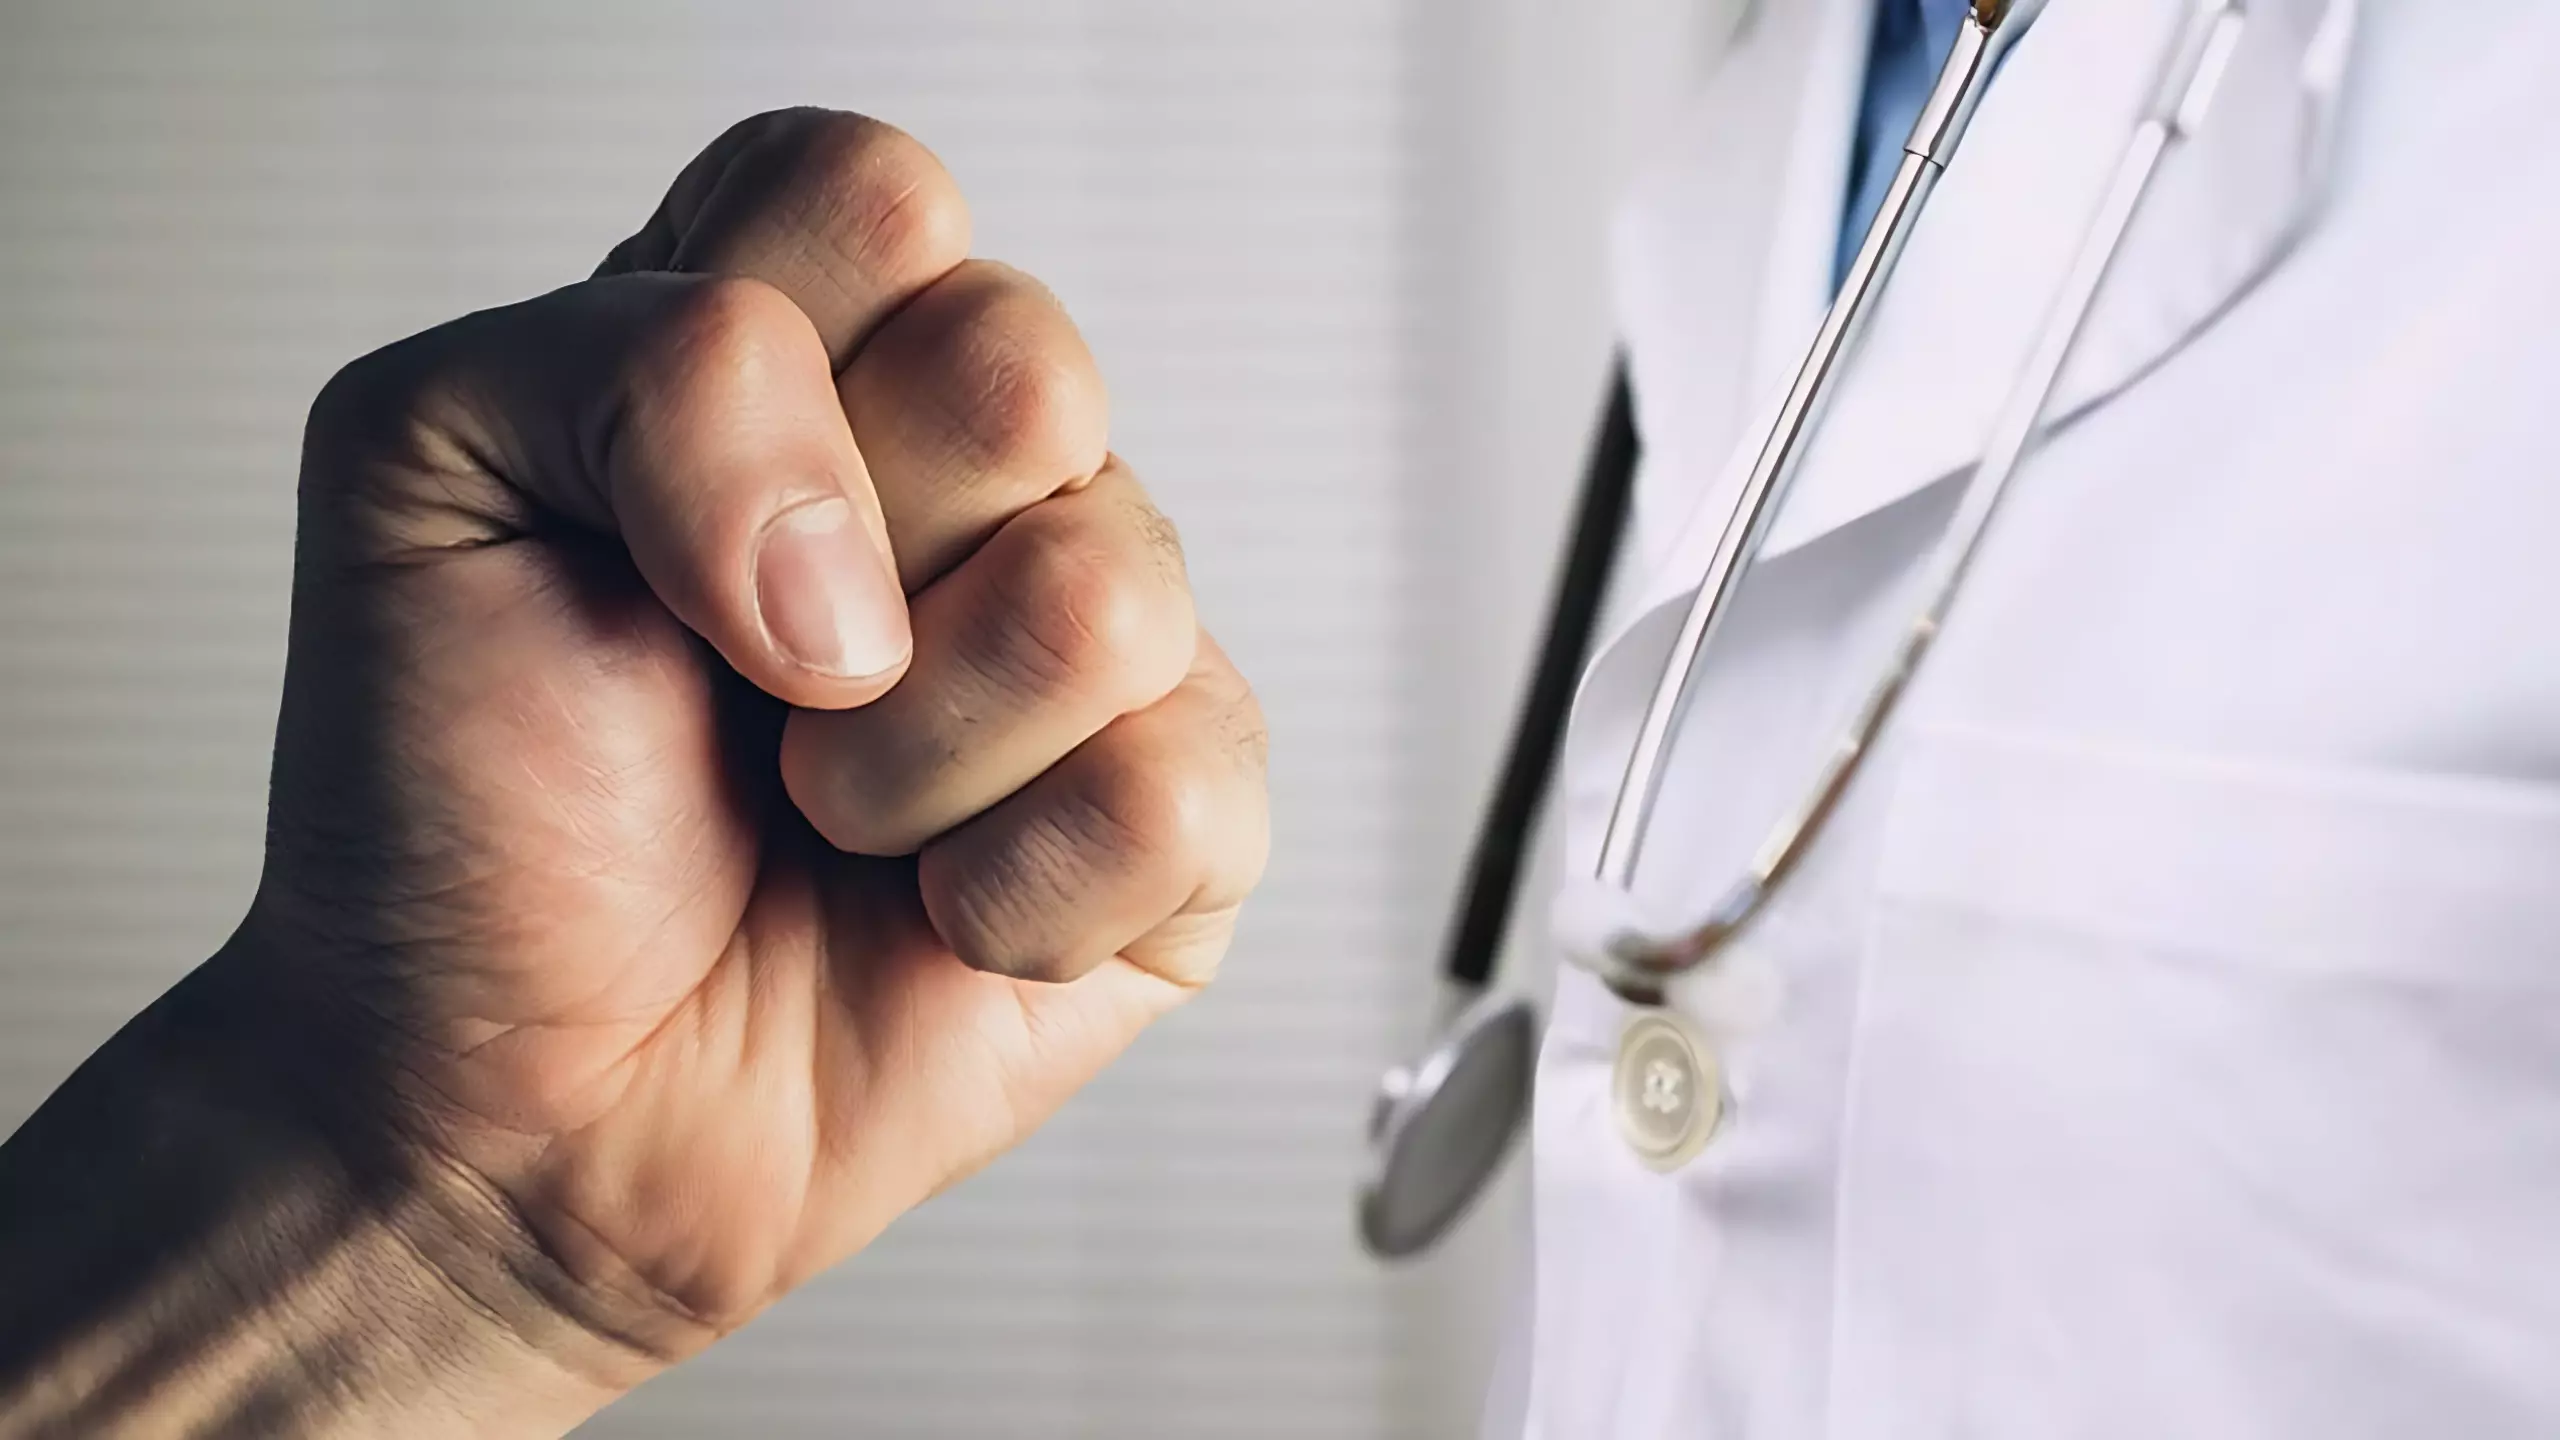 Лечение с риском для жизни: почему нападения на врачей становятся буднями медицины